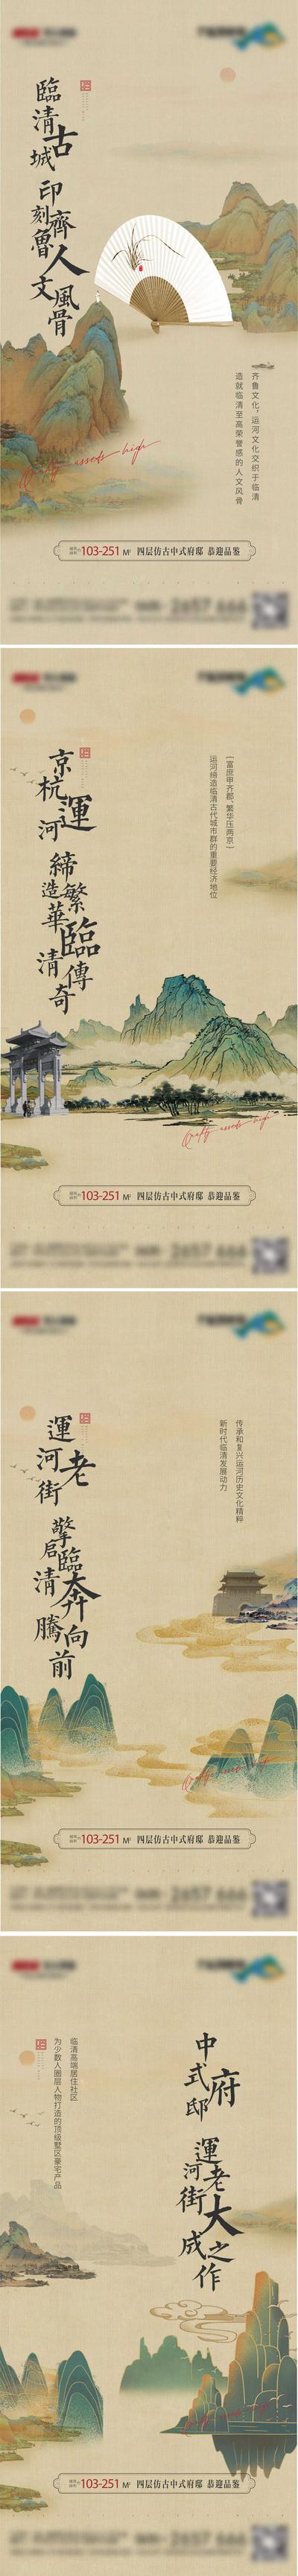 【南门网】海报 房地产 价值点 文脉 中式 中国风 山水 千里江山图 扇子 系列